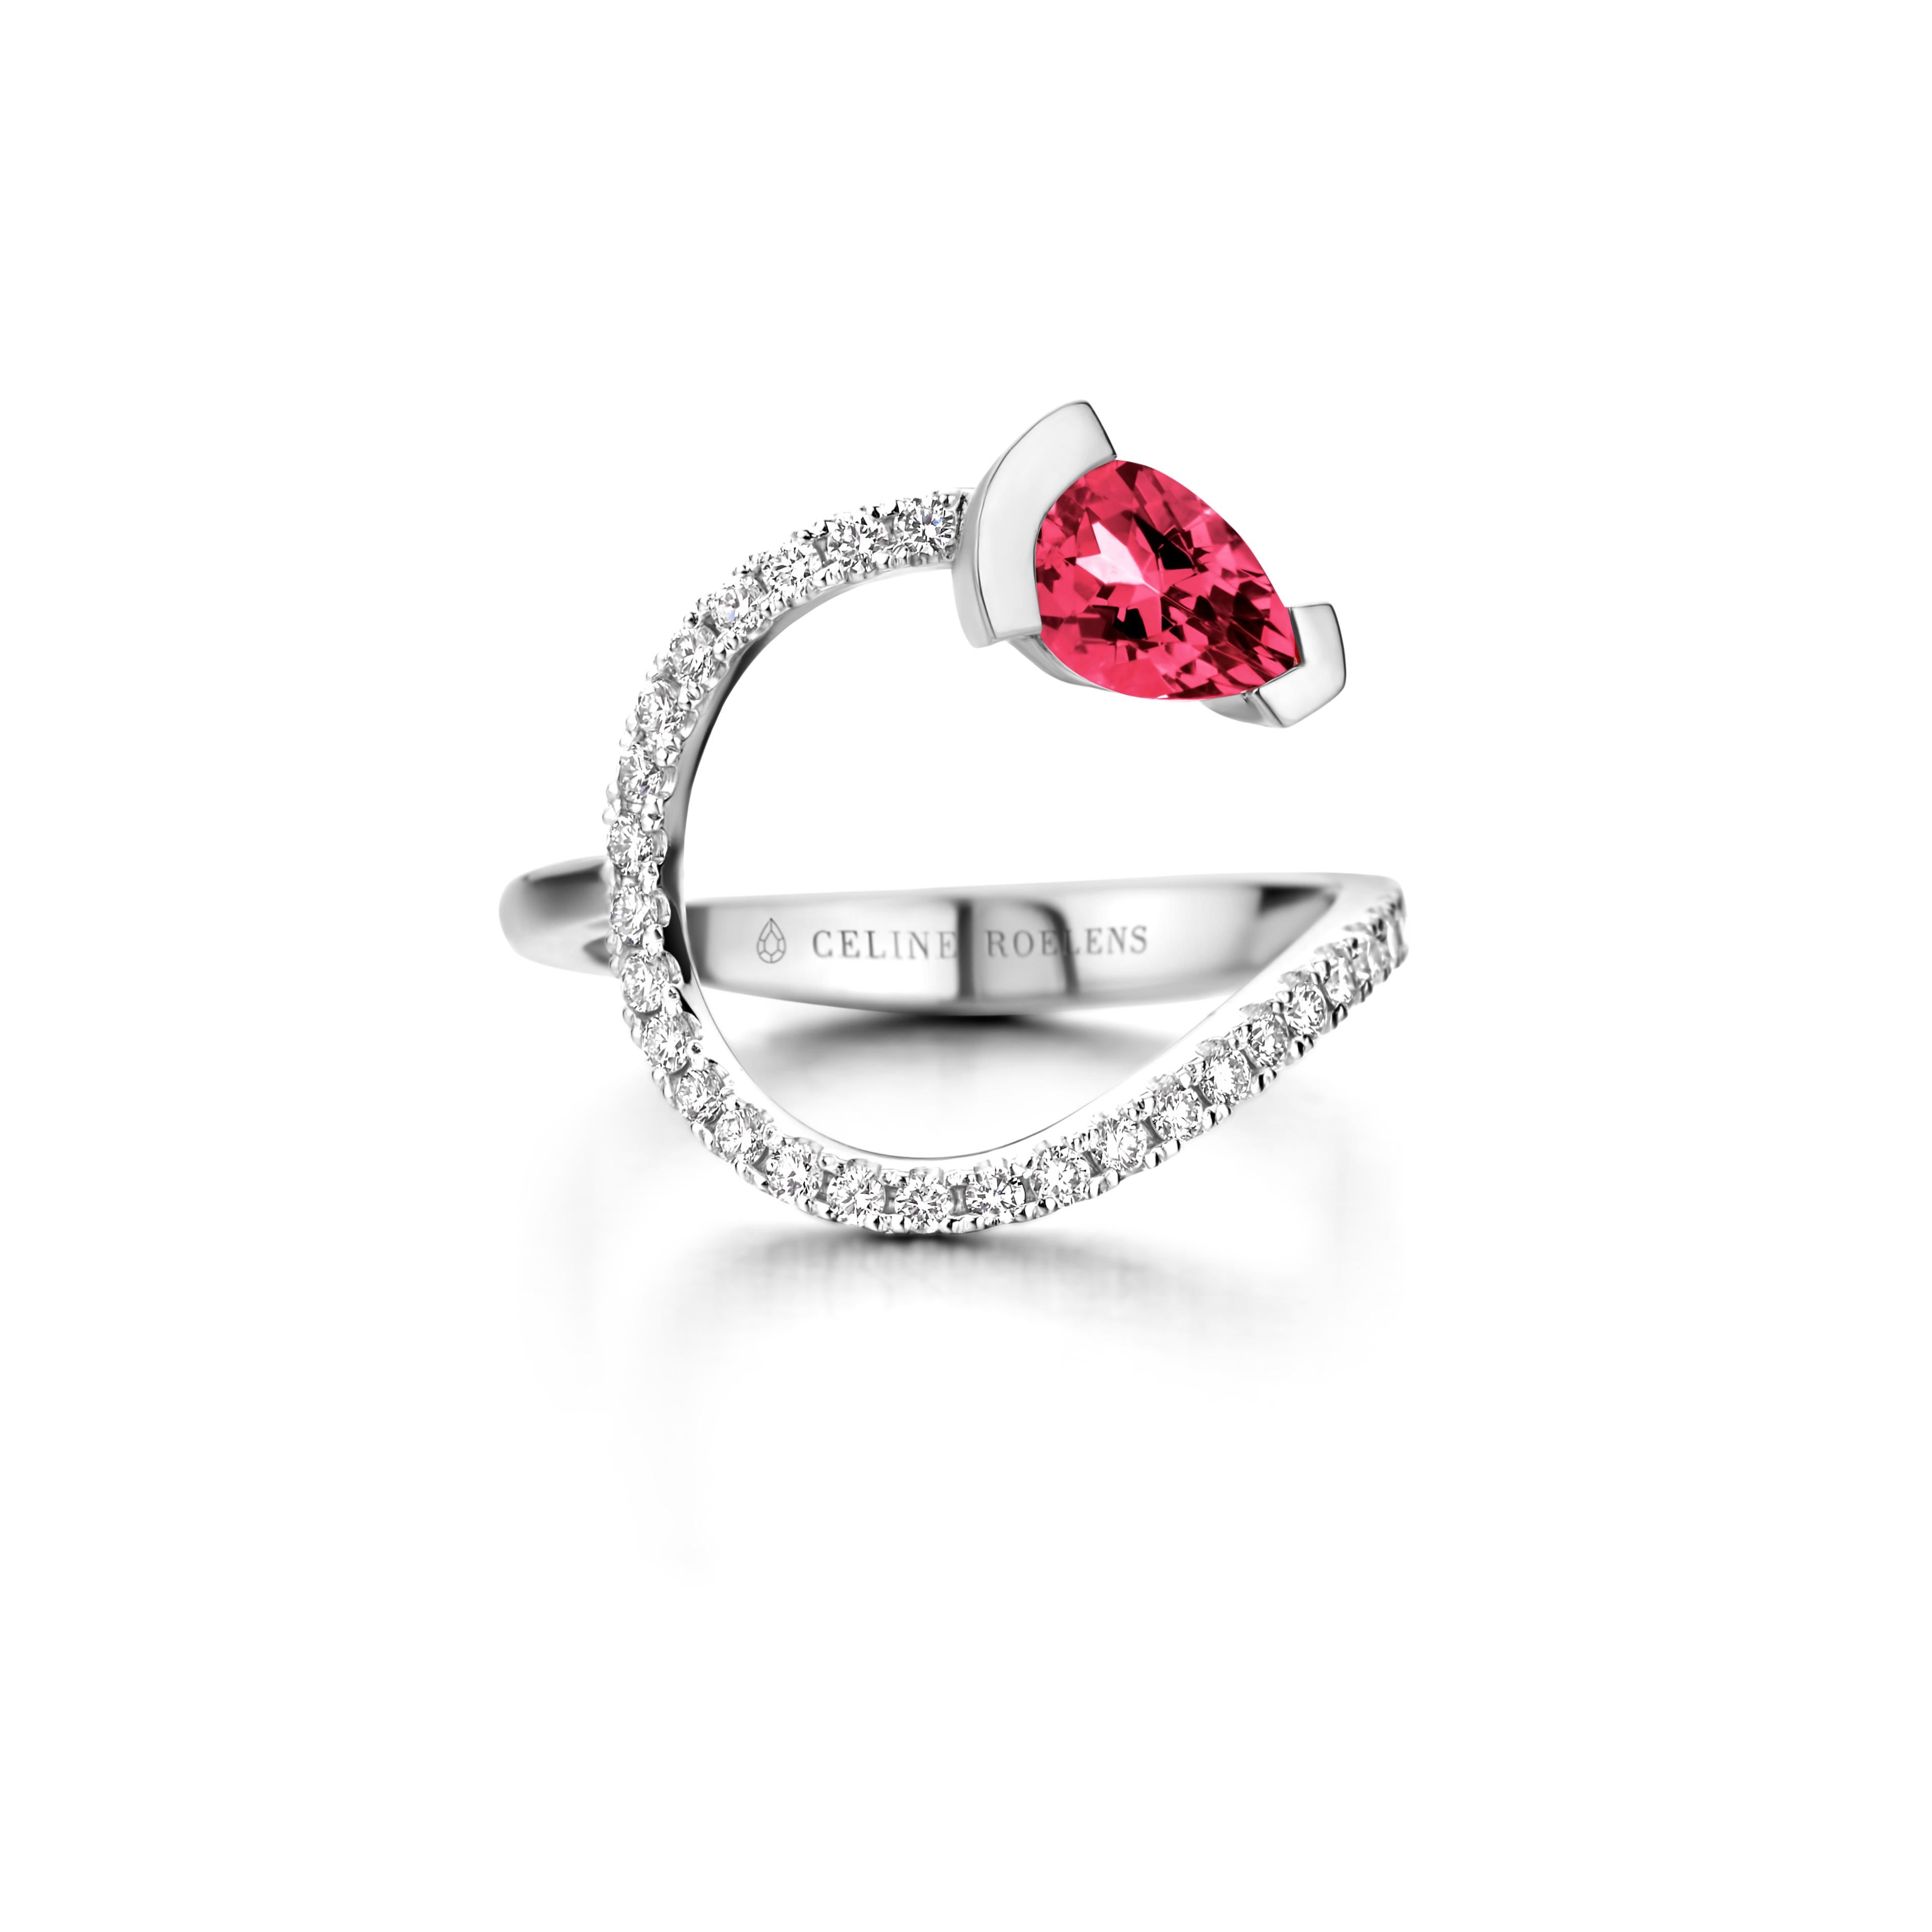 Gebogener Ring ADELINE aus 18 Kt Roségold, besetzt mit einem birnenförmigen Rubellit und 0,33 Karat Diamanten mit weißem Brillantschliff - Qualität VS F.